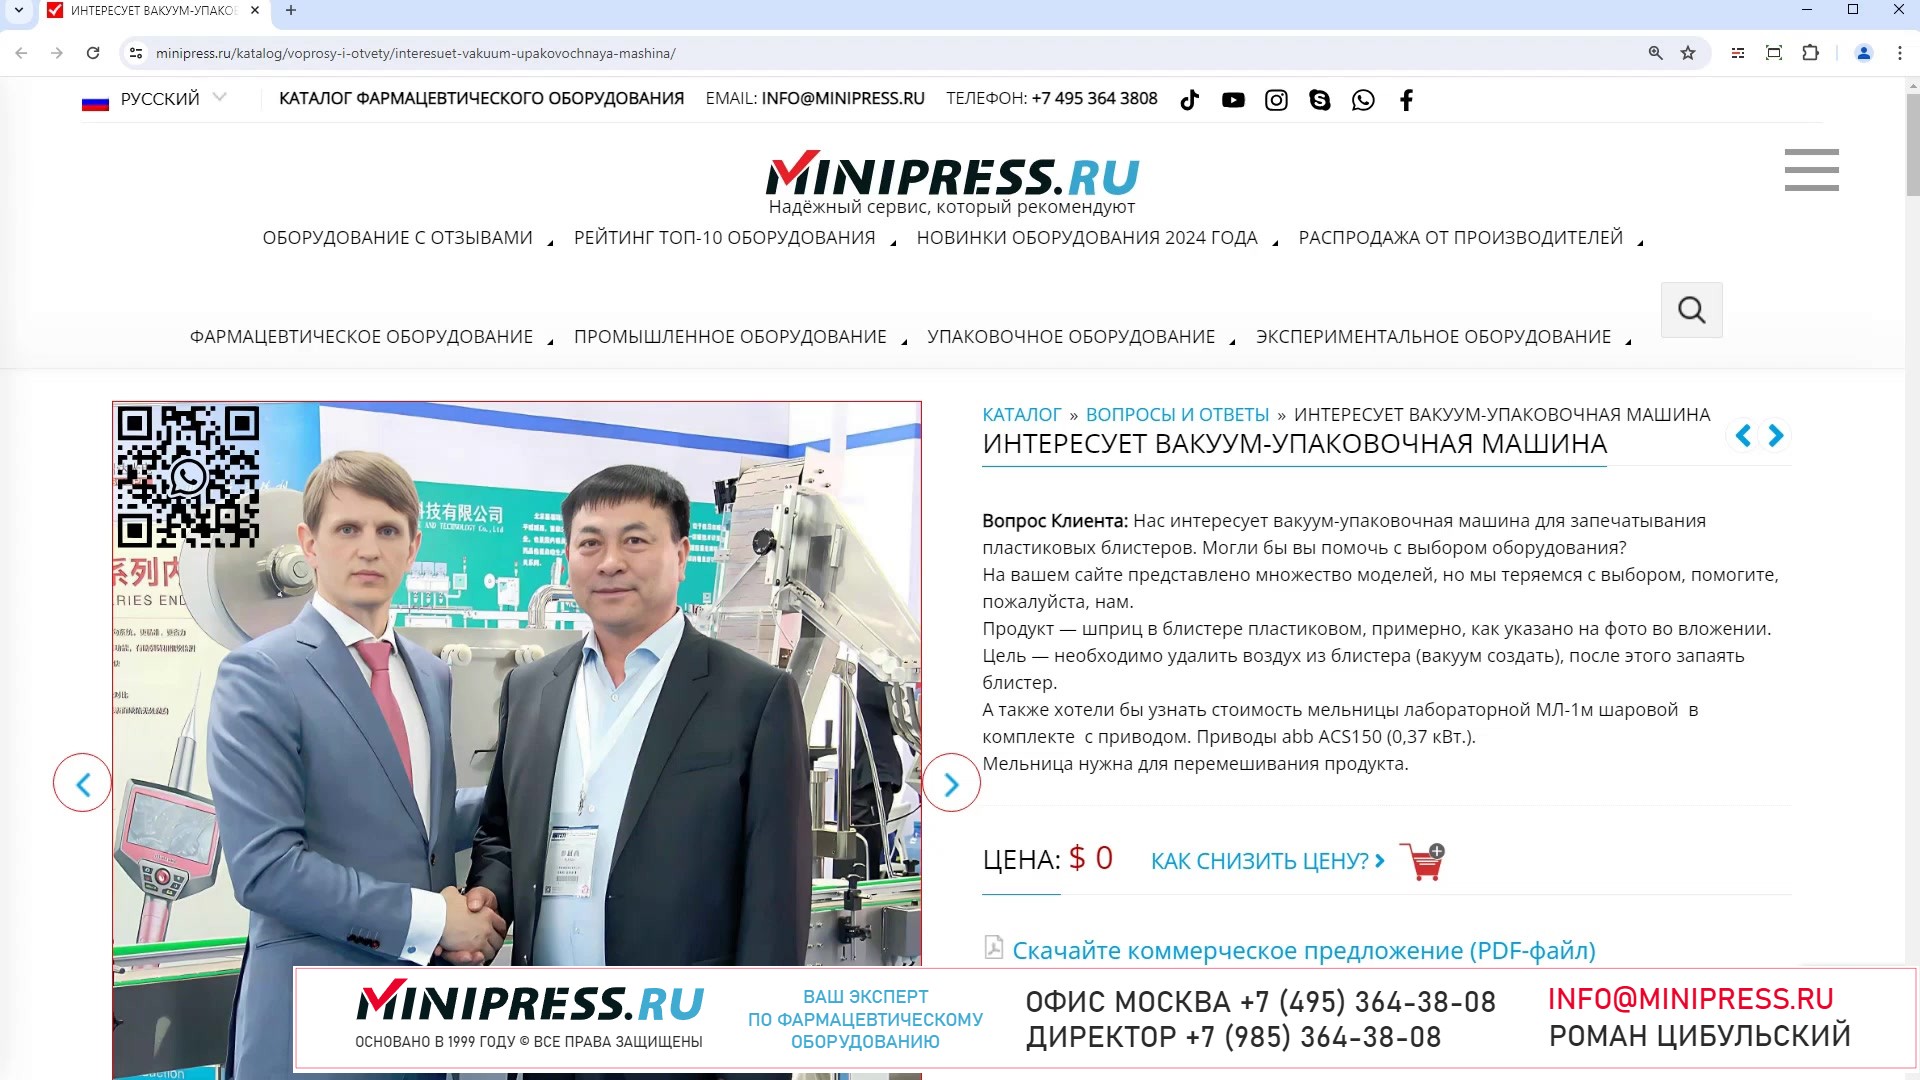 Minipress.ru Интересует вакуум-упаковочная машина